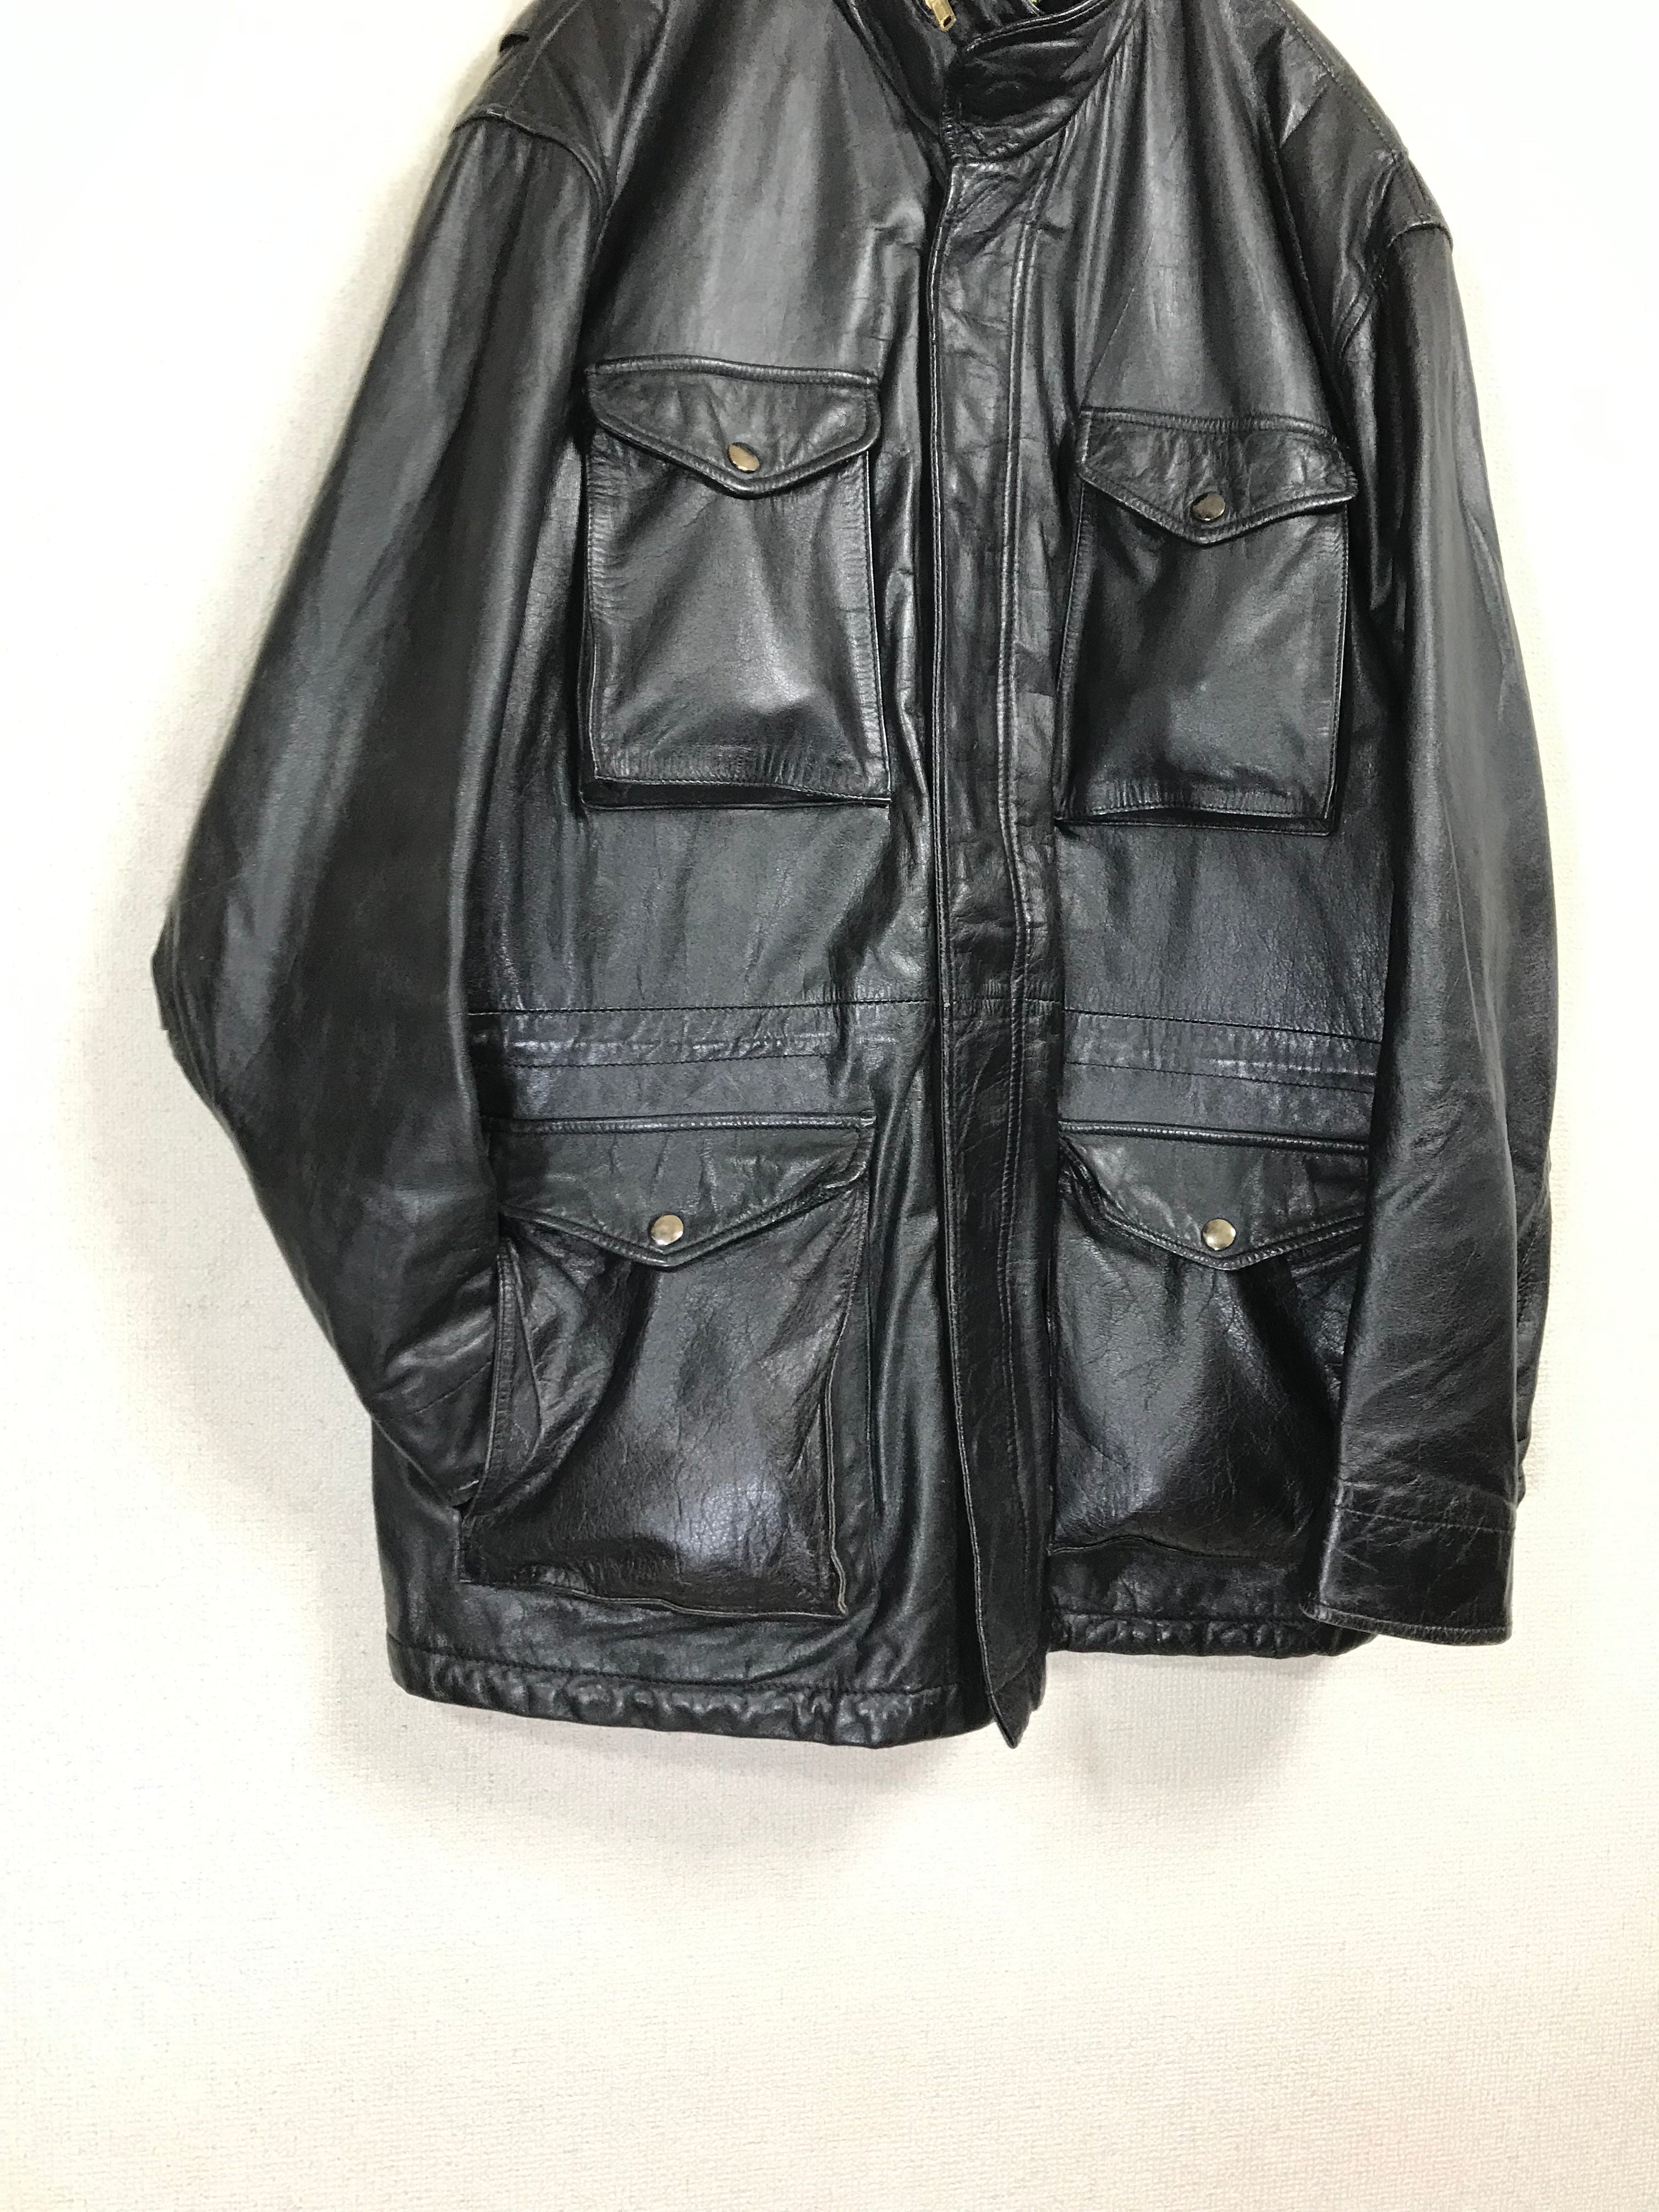 M65 type leather jacket